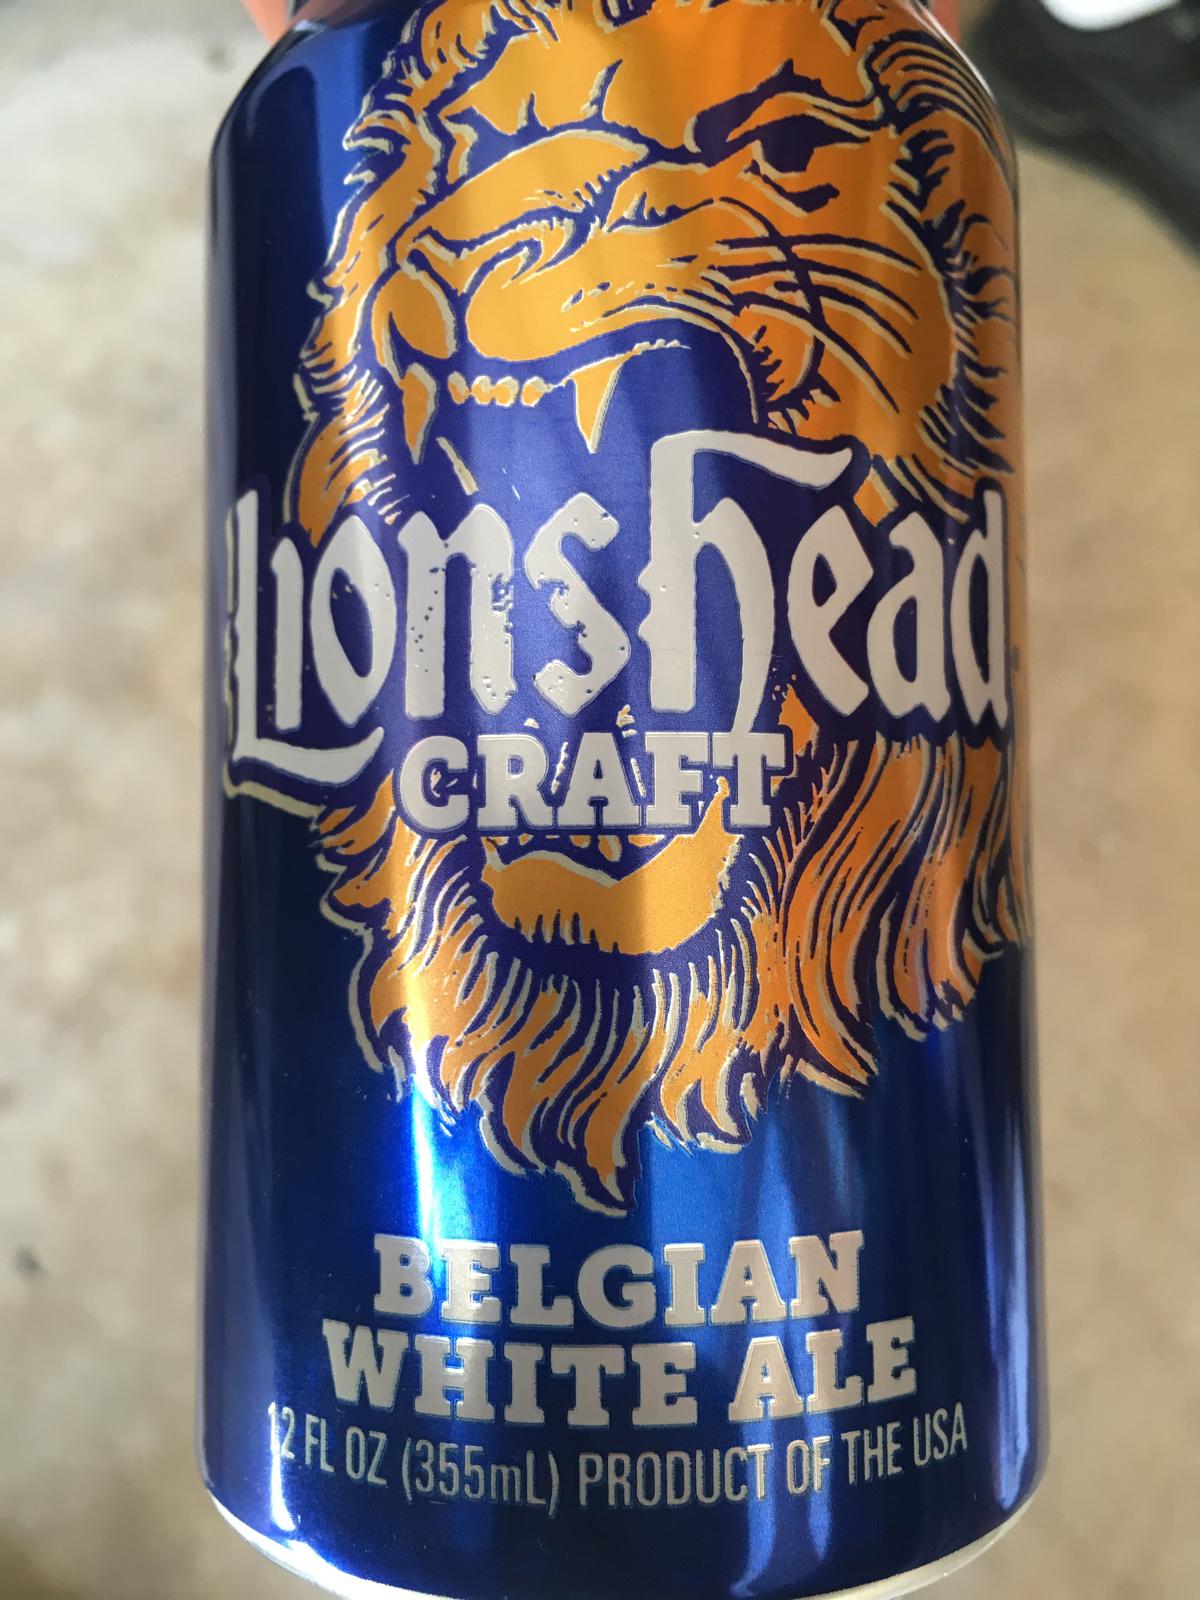 Lionshead Craft